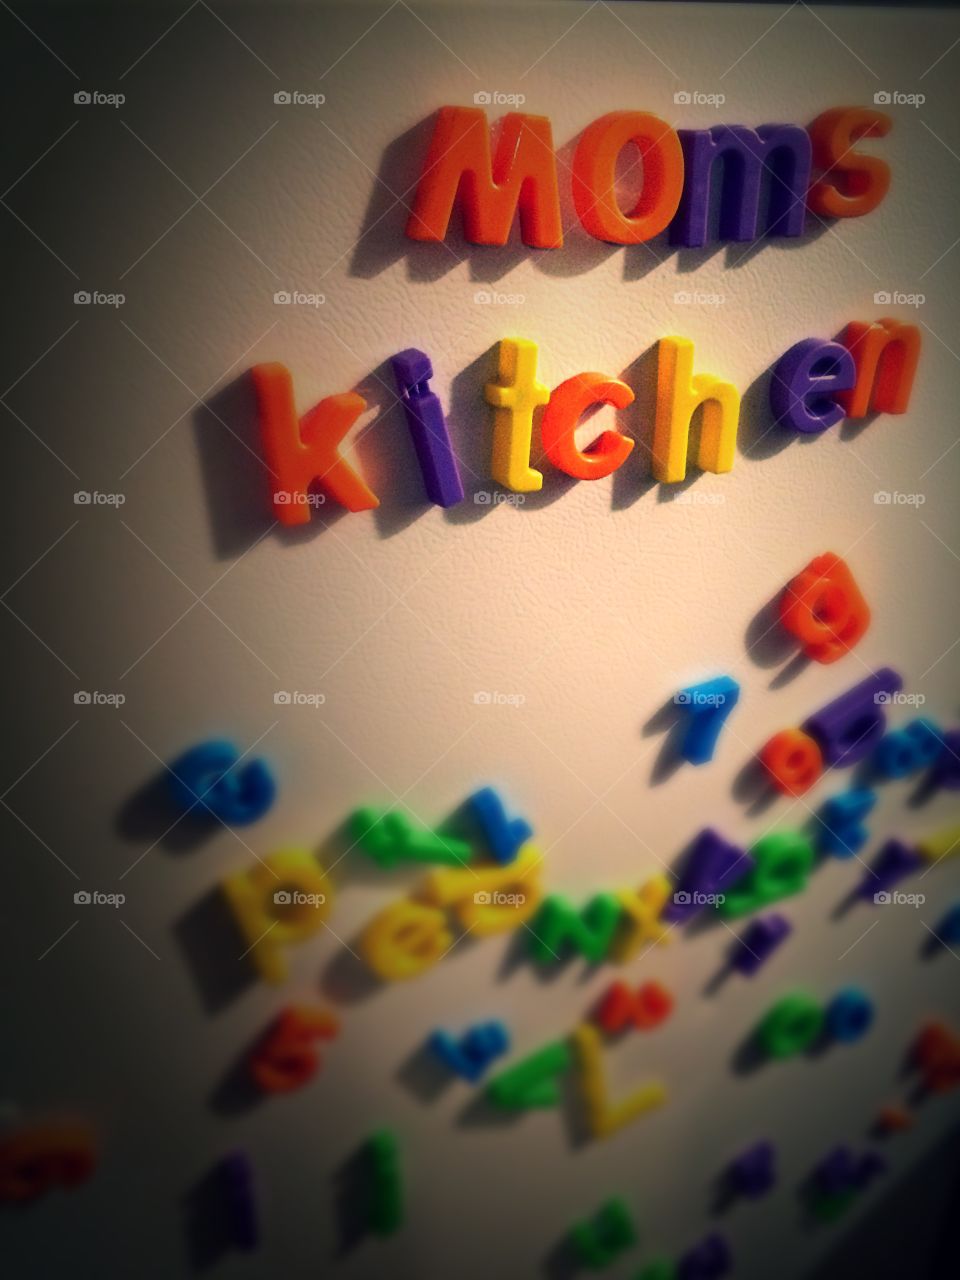 Mom's kitchen 